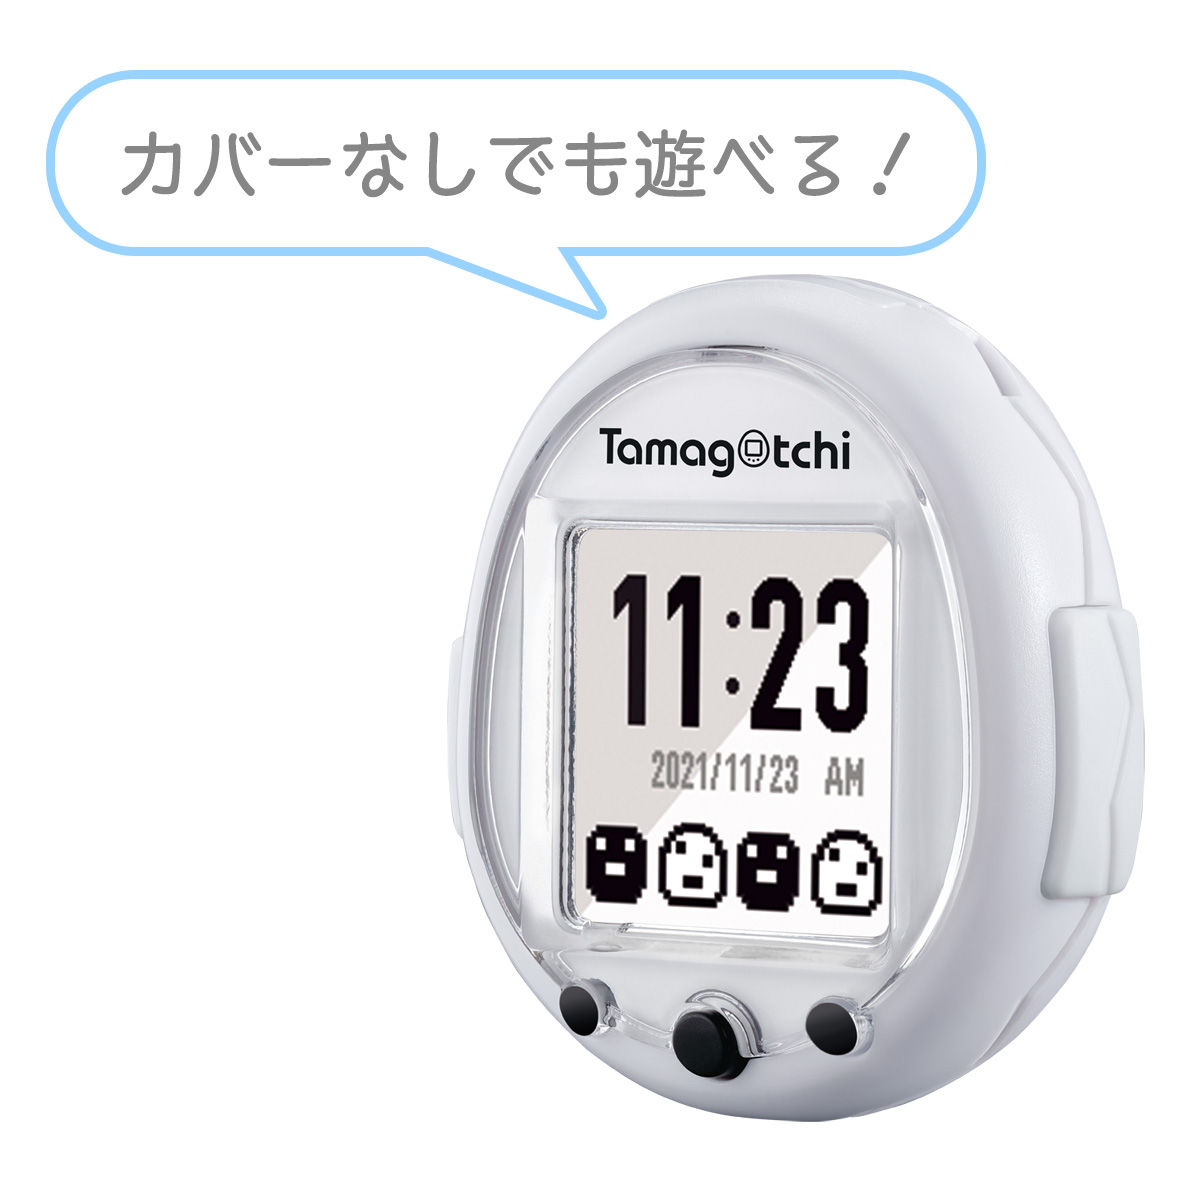 【抽選販売】たまごっちスマート『Tamagotchi Smart 25th アニバーサリーセット』たまごっち-007